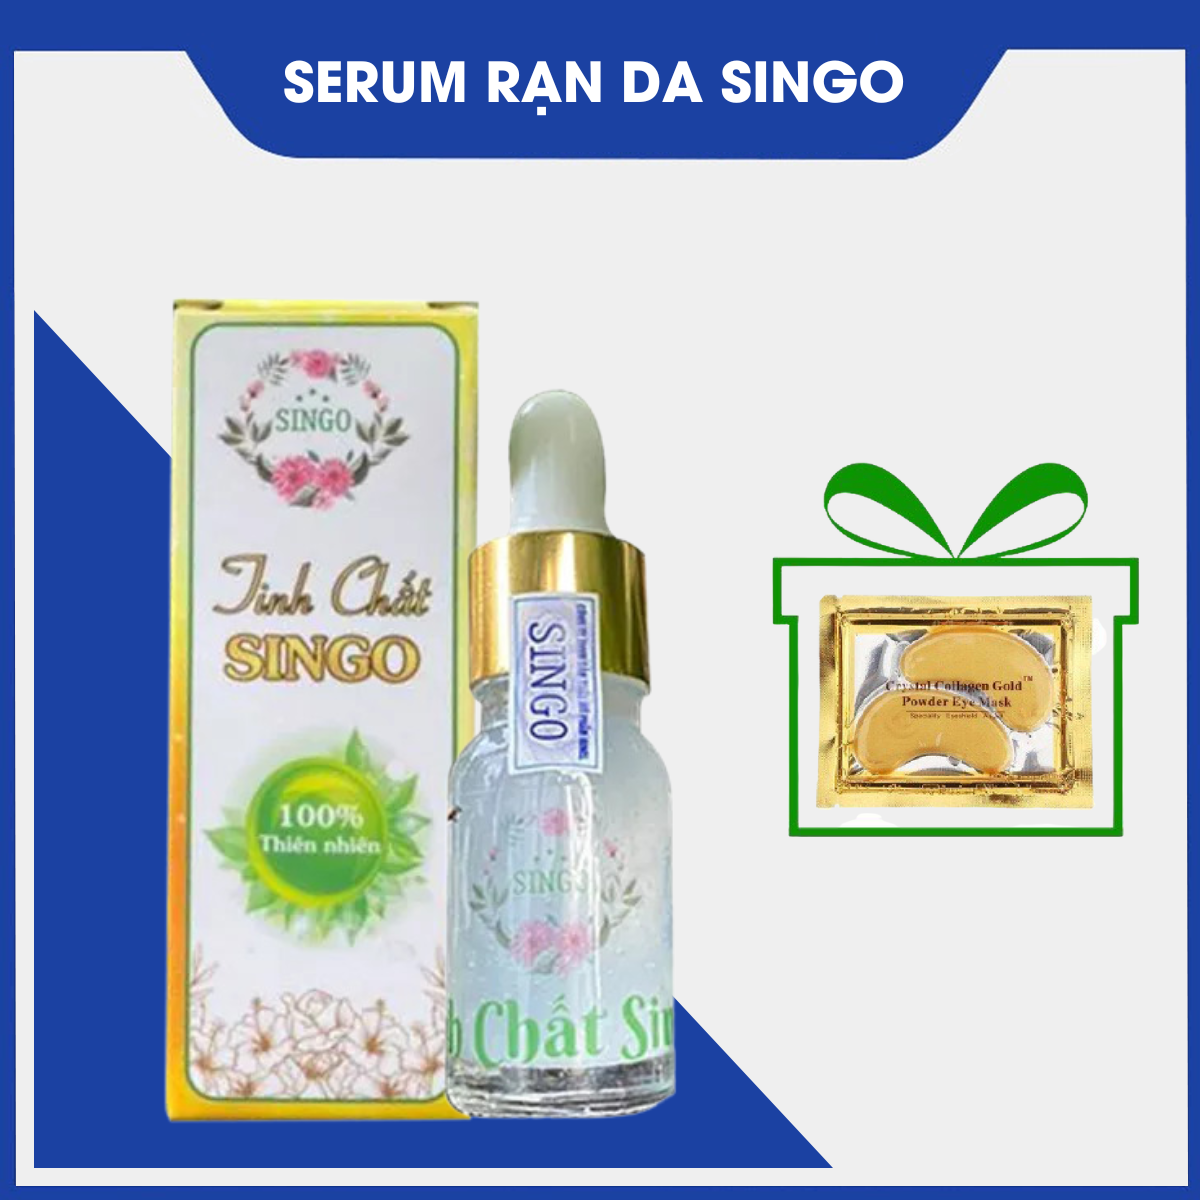 Serum rạn da Singo - Serum rạn da, tái tạo da, phục hồi da, dưỡng ẩm